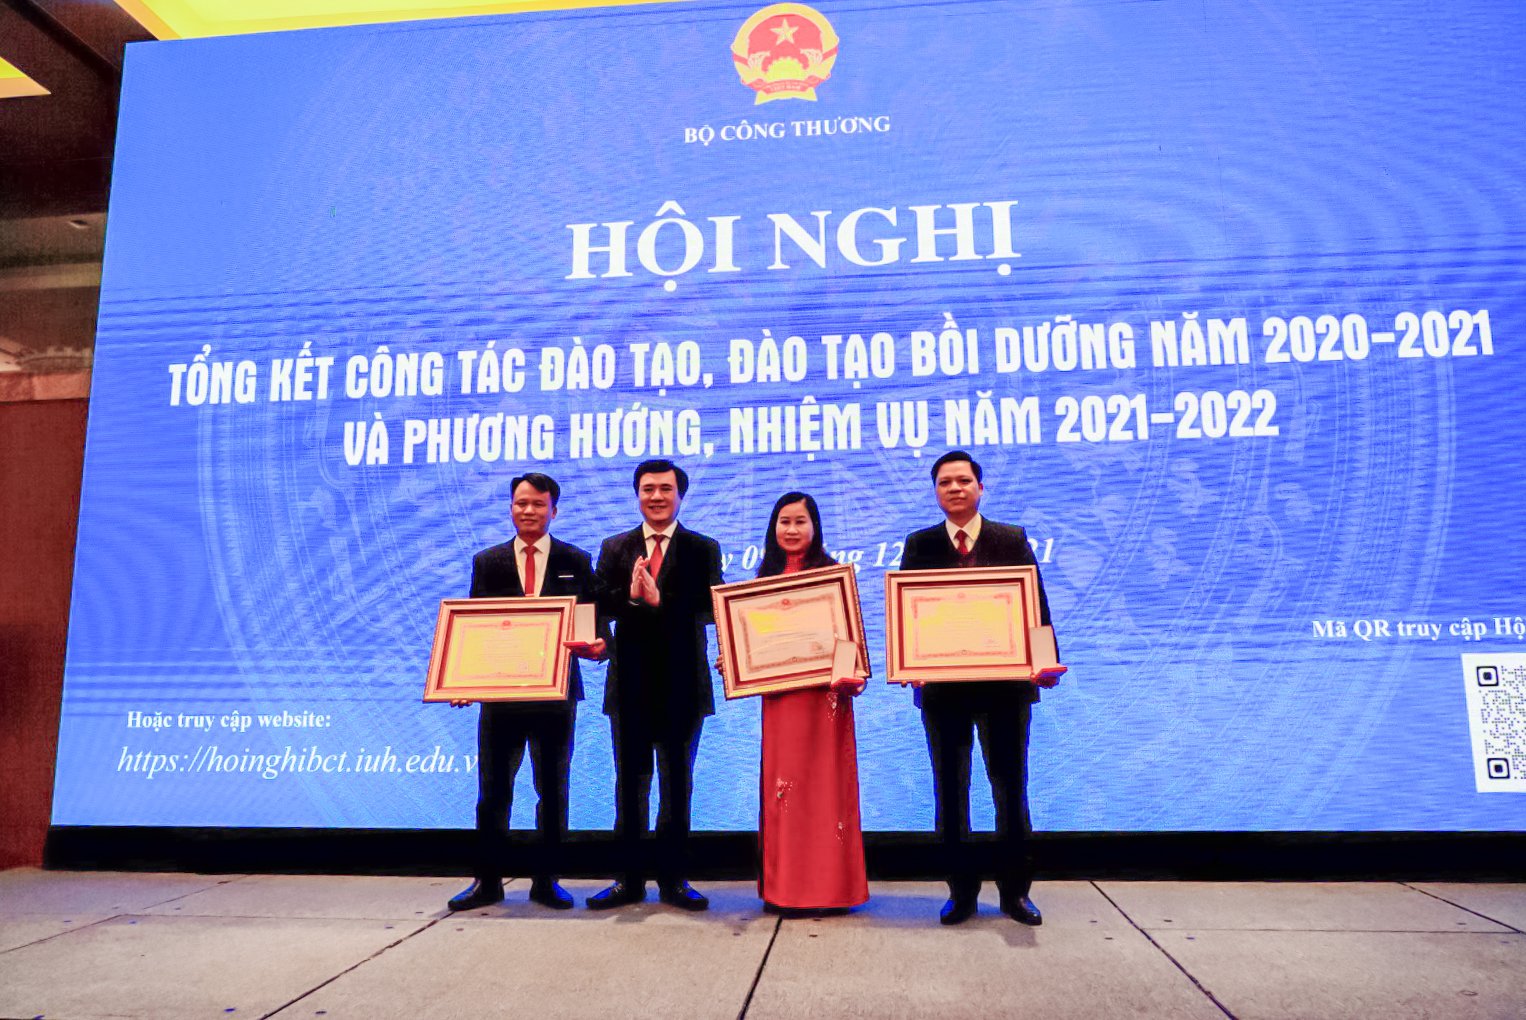 Đại học Công nghiệp Hà Nội nhận Cờ thi đua xuất sắc tại Hội nghị tổng kết công tác đào tạo năm học 2020 – 2021 của Bộ Công Thương